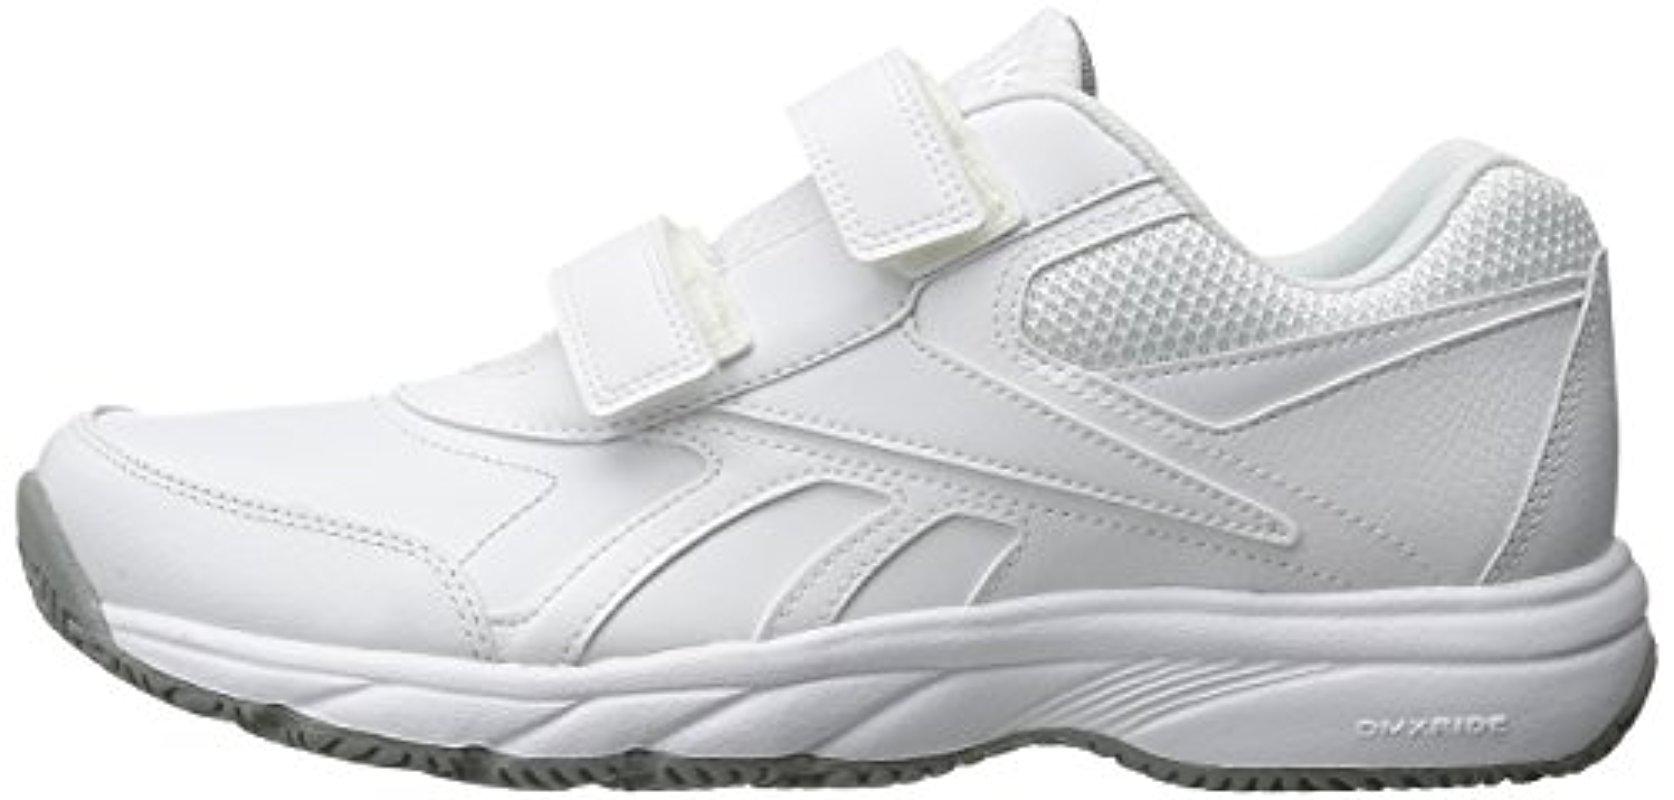 Reebok Leather Work 'n Cushion Kc 2.0 Walking Shoe in Gray for Men - Lyst